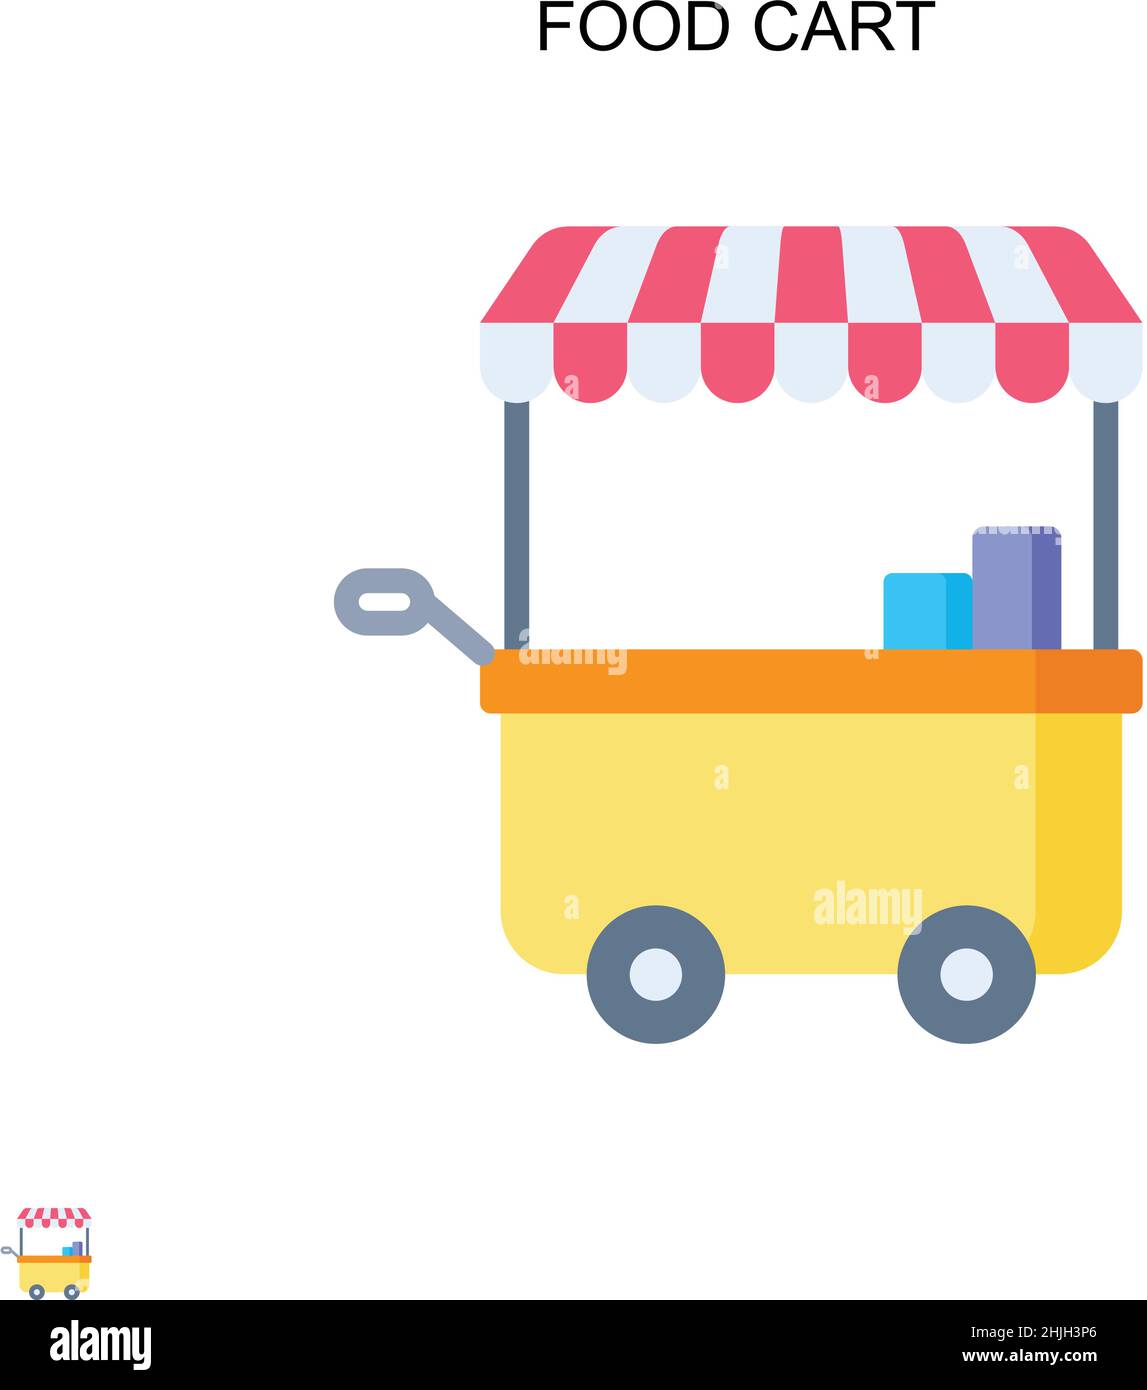 Icona vettoriale semplice del carrello per alimenti. Modello di disegno del simbolo di illustrazione per l'elemento dell'interfaccia utente mobile Web. Illustrazione Vettoriale